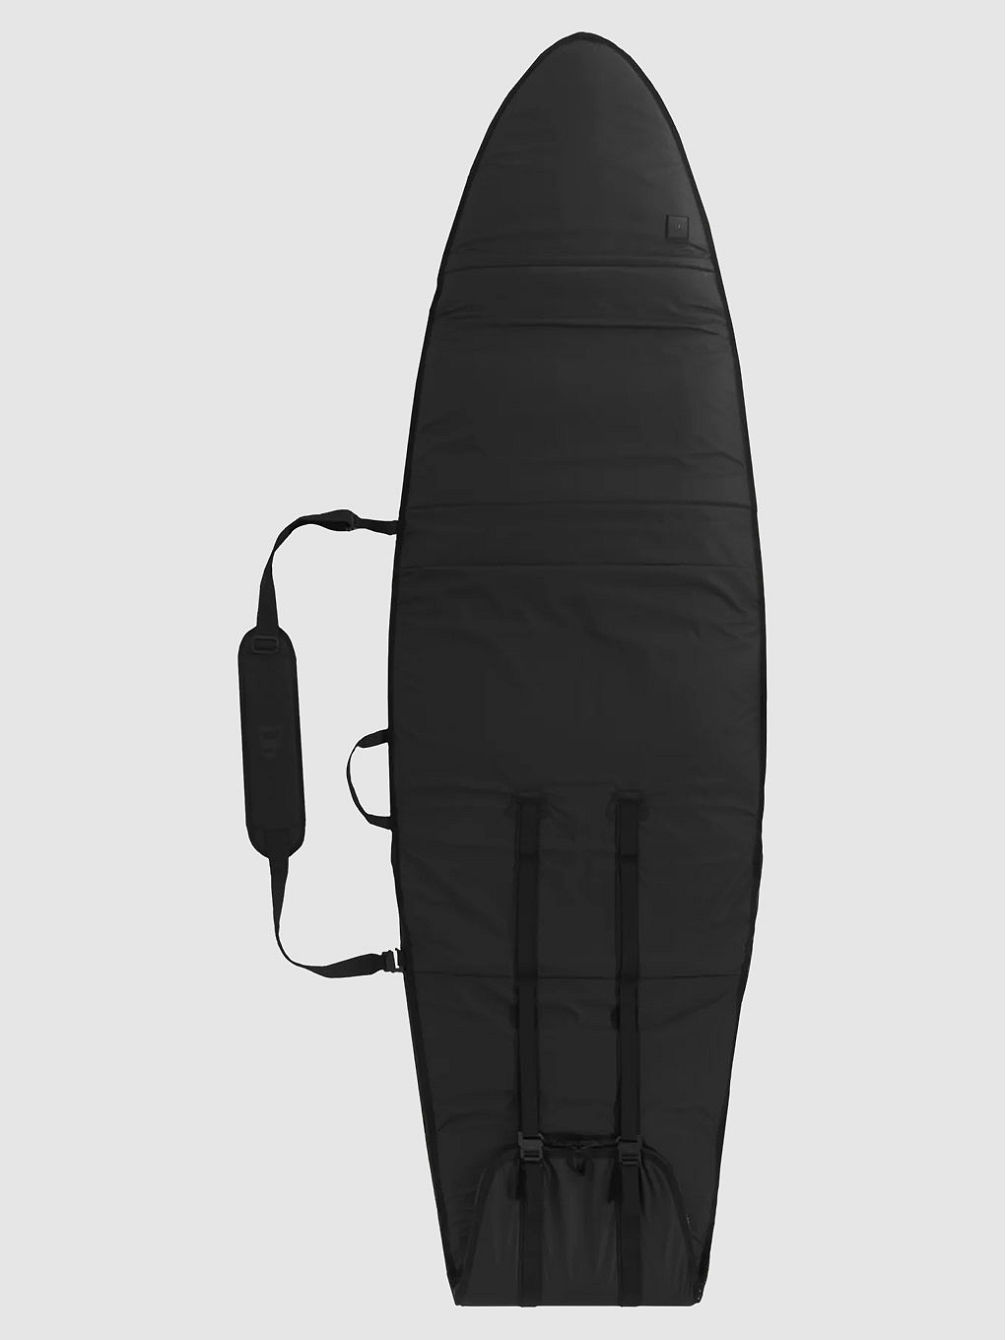 Single Board Mid-Length Surfboard-Tasche